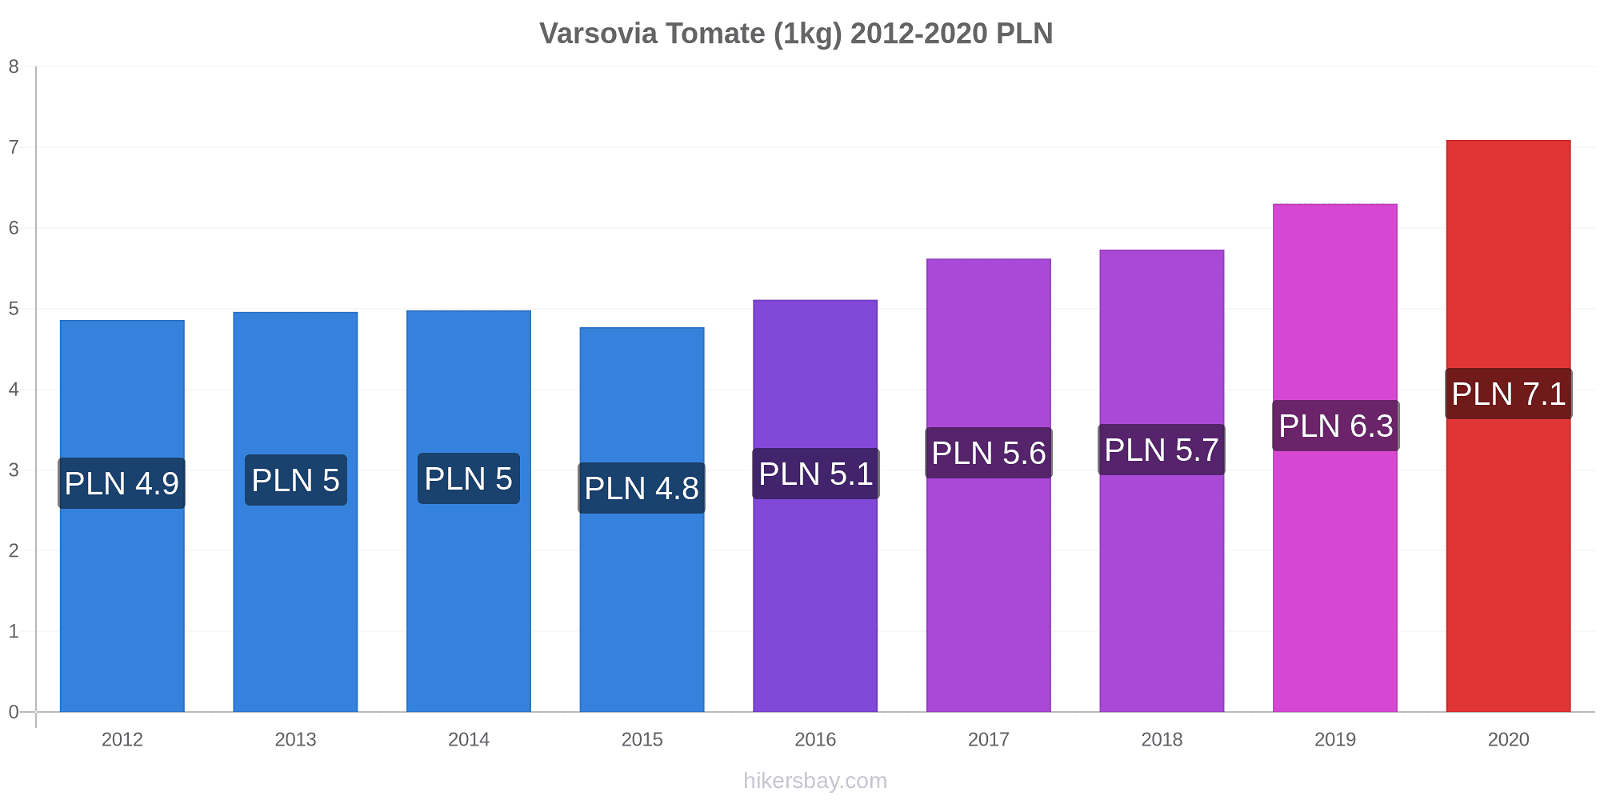 Varsovia cambios de precios Tomate (1kg) hikersbay.com